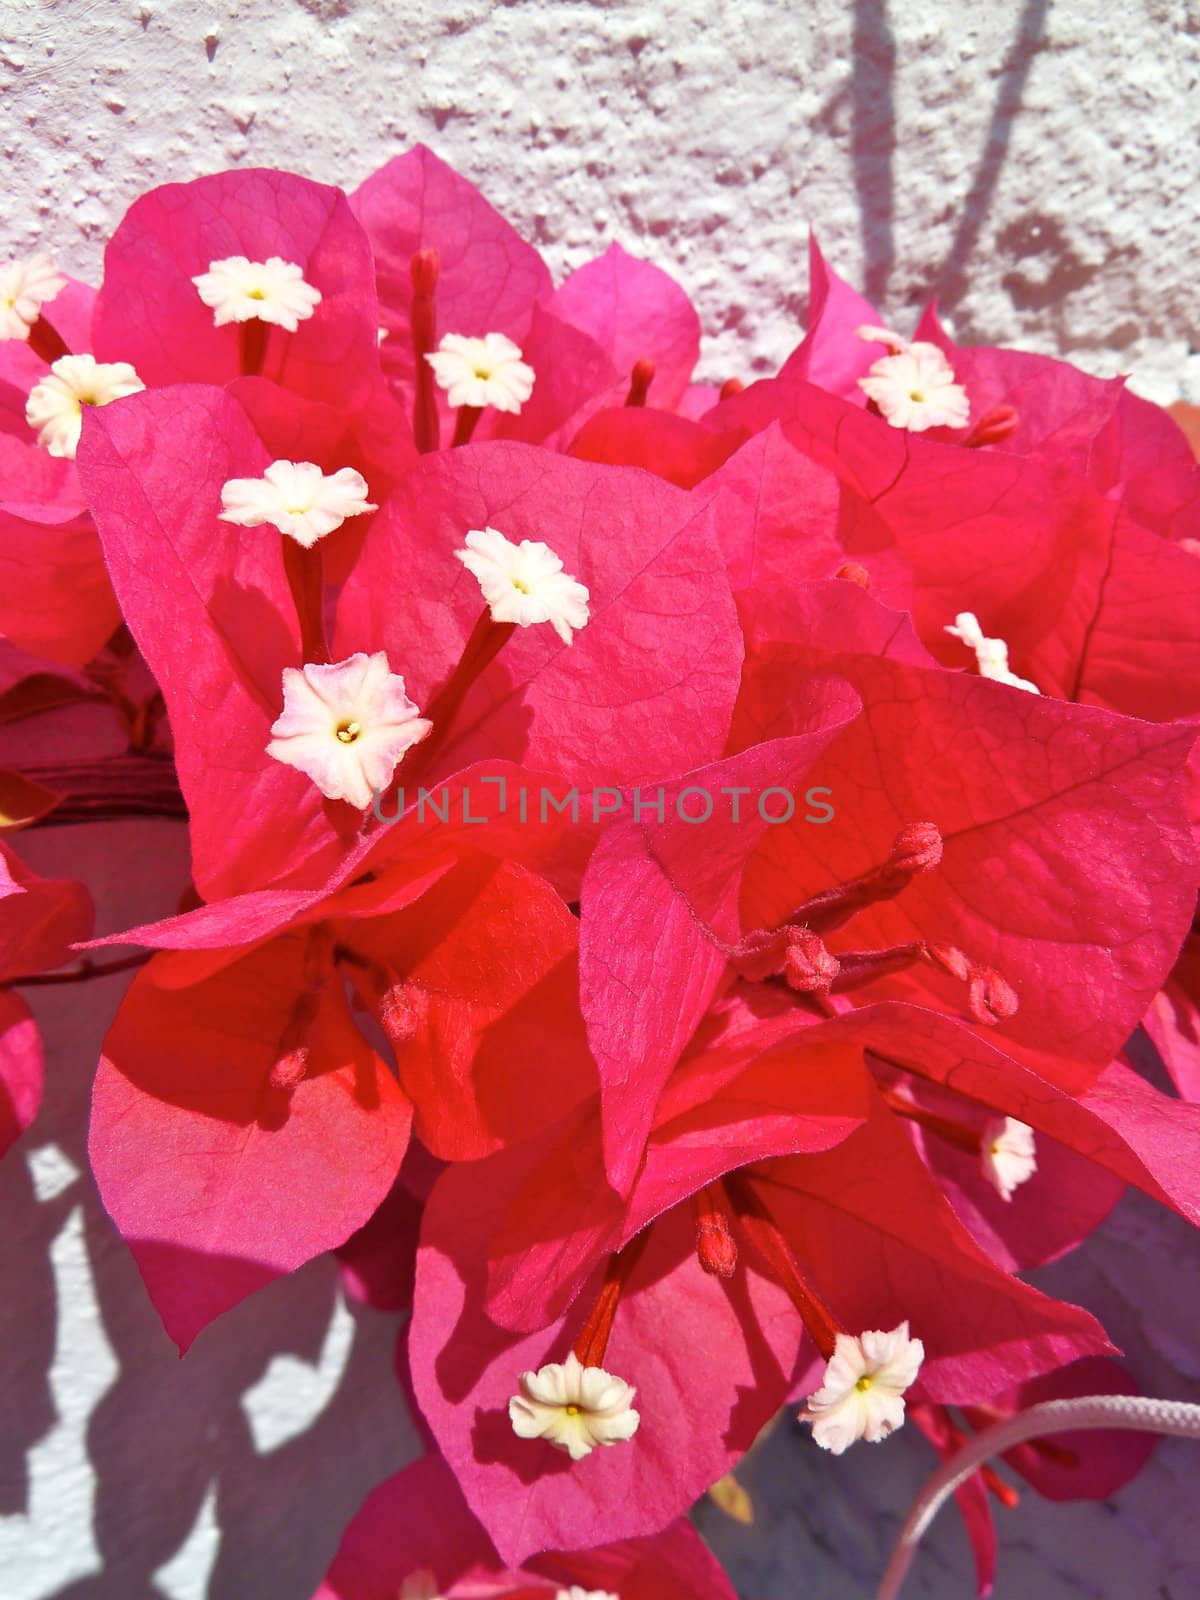 bougainvillea flowers by gazmoi